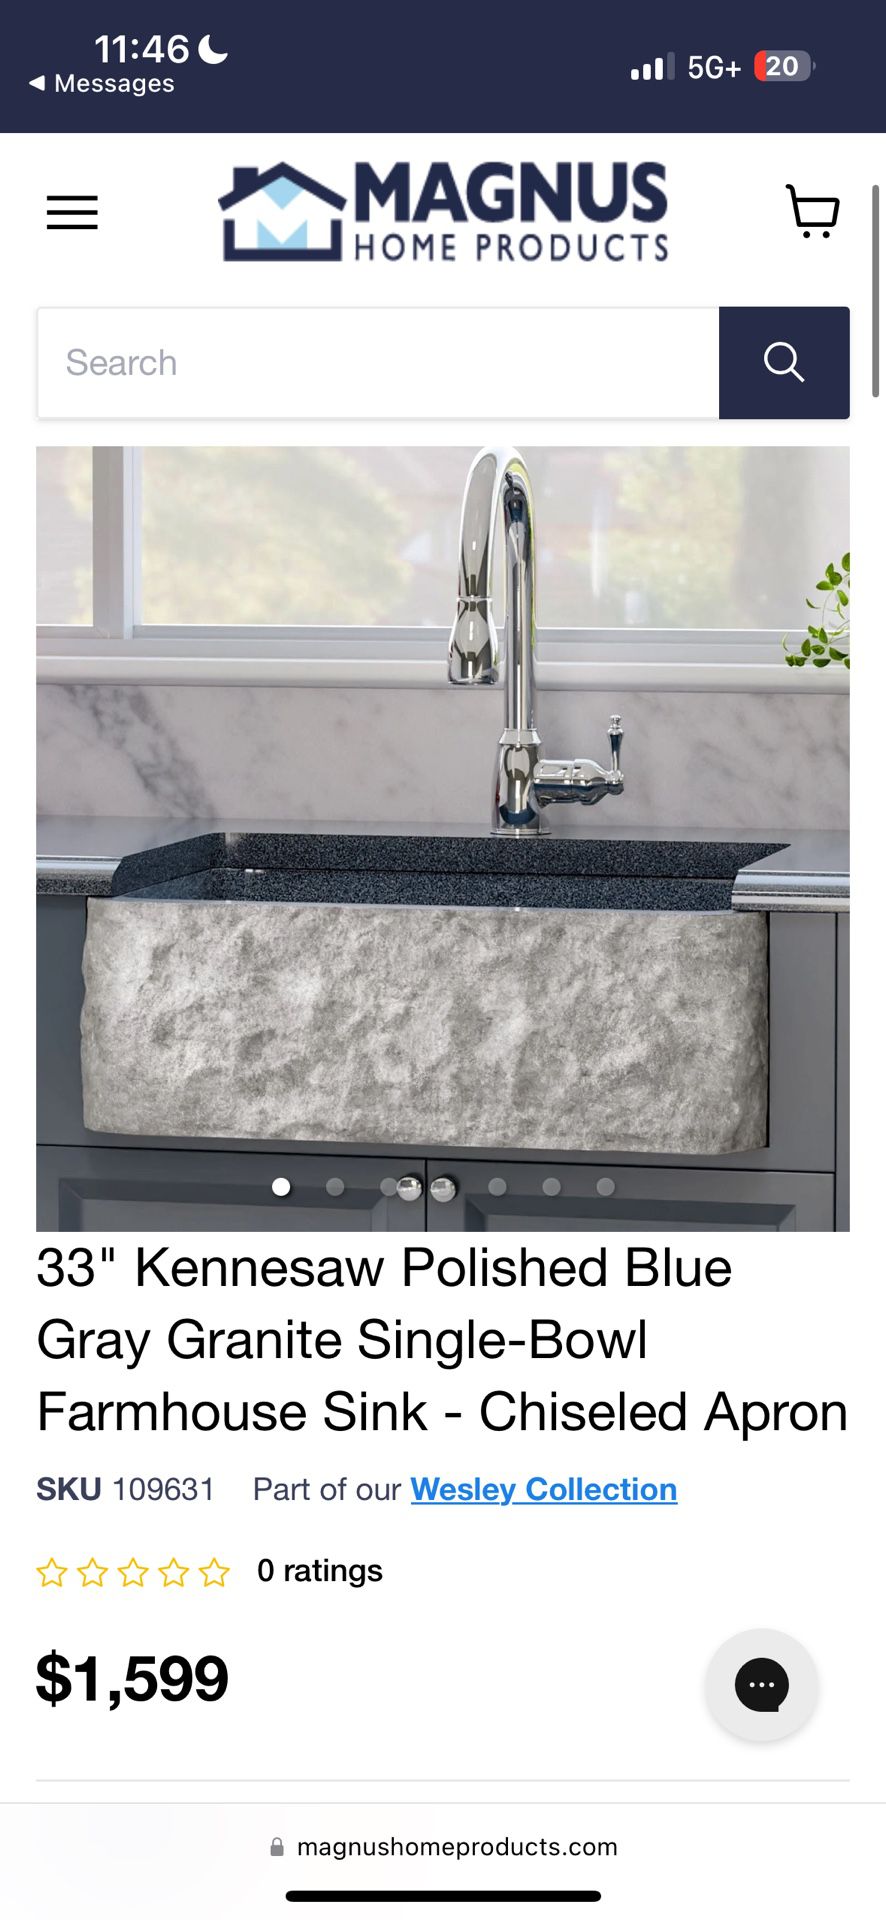 Solid Granite Stone Front Kitchen Sink